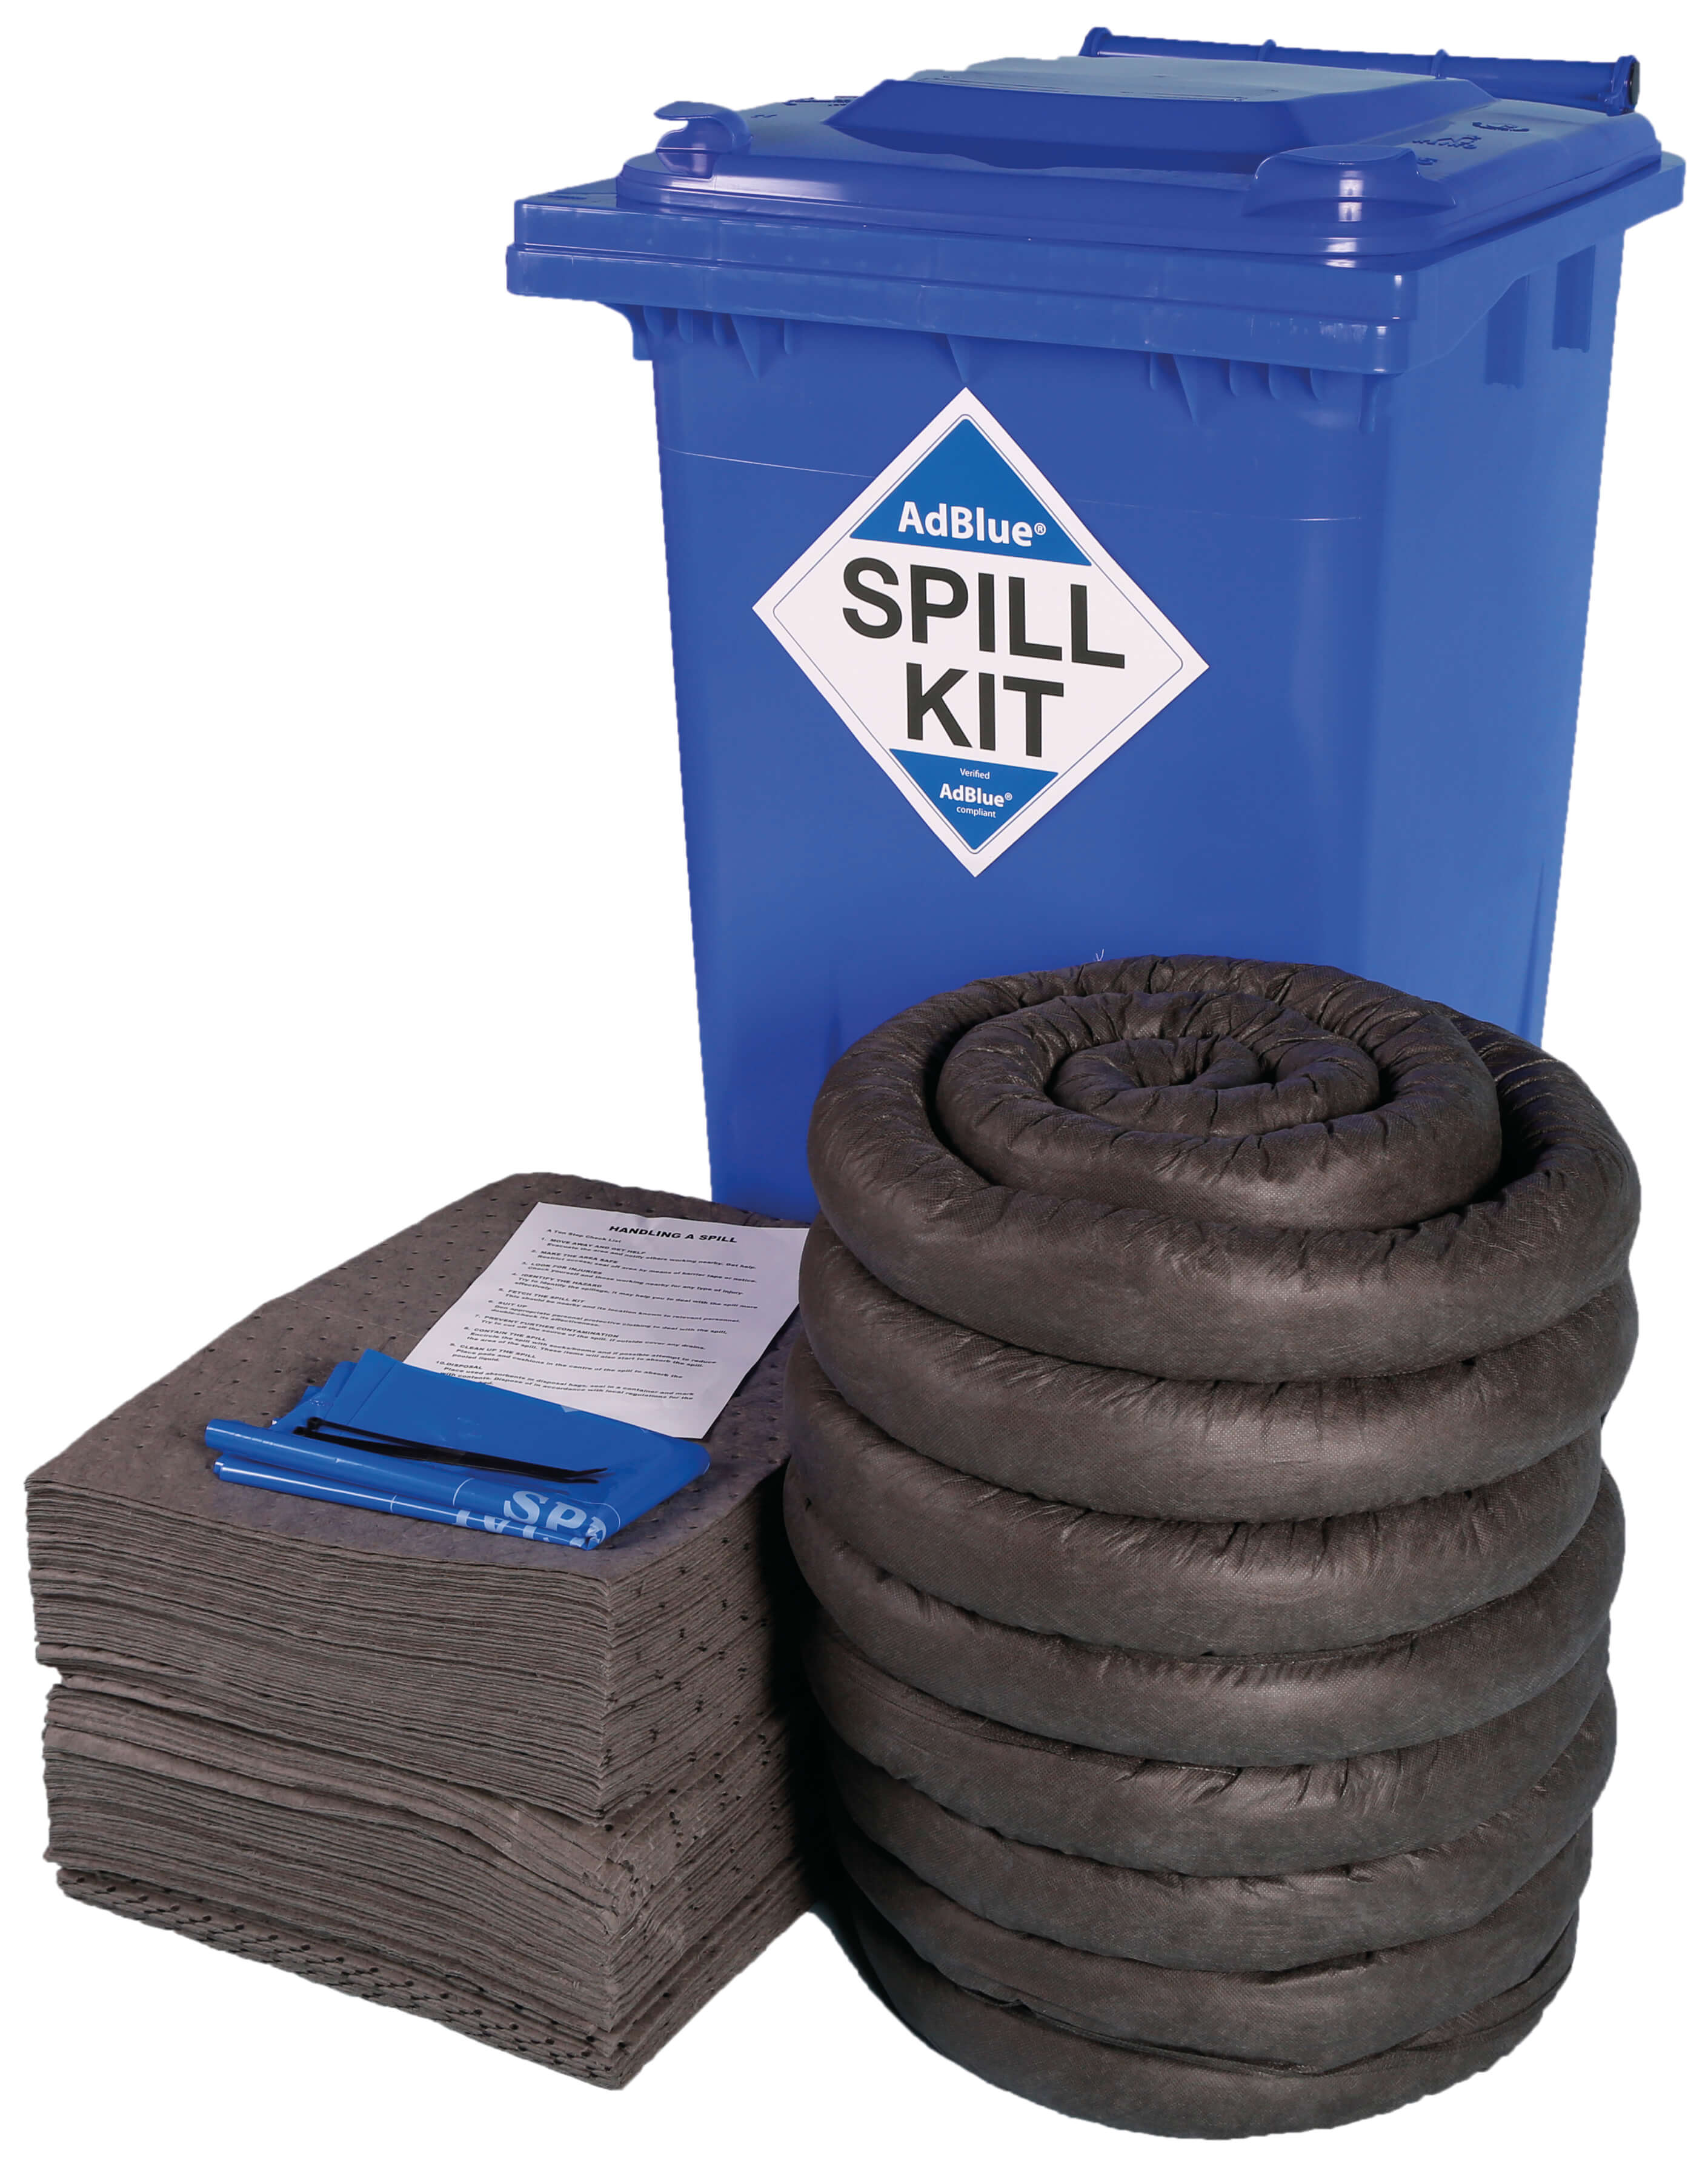 240 litre AdBlue spill kit in blue wheelie bin